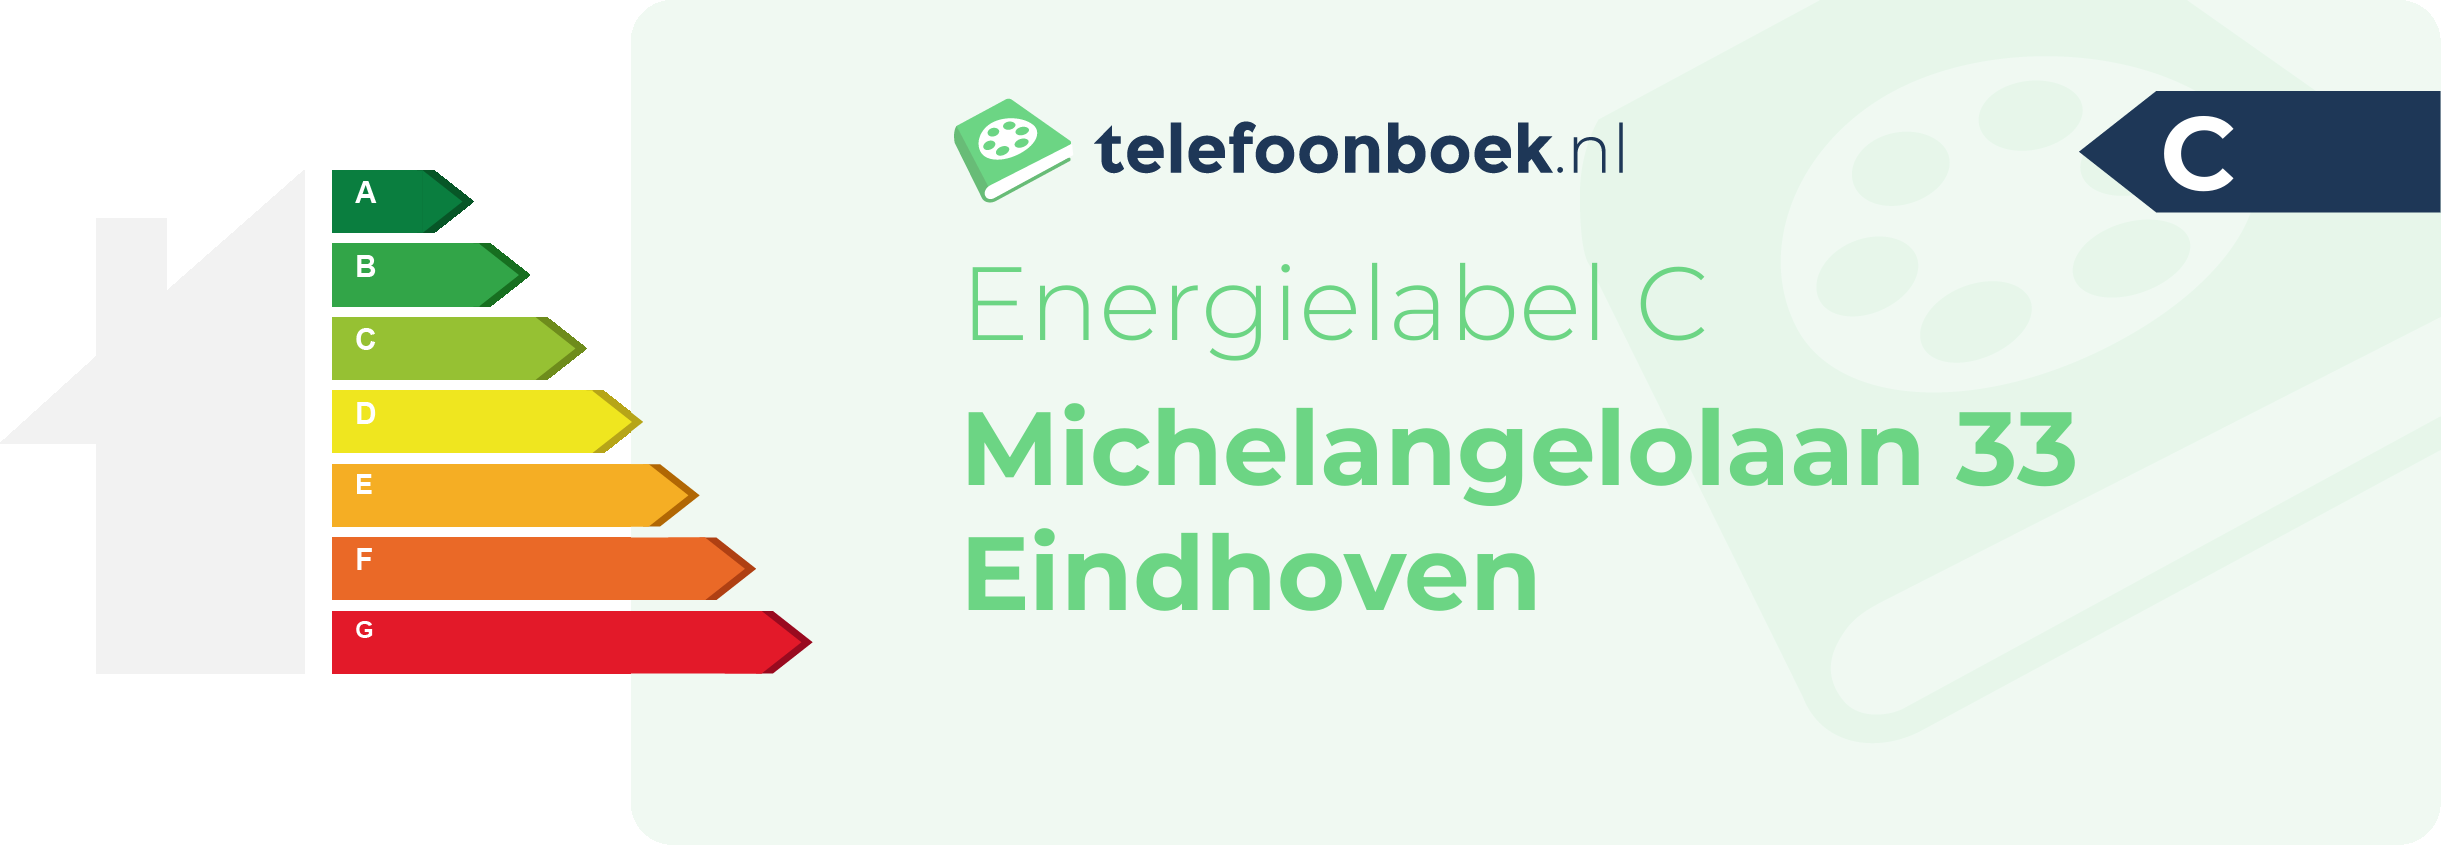 Energielabel Michelangelolaan 33 Eindhoven